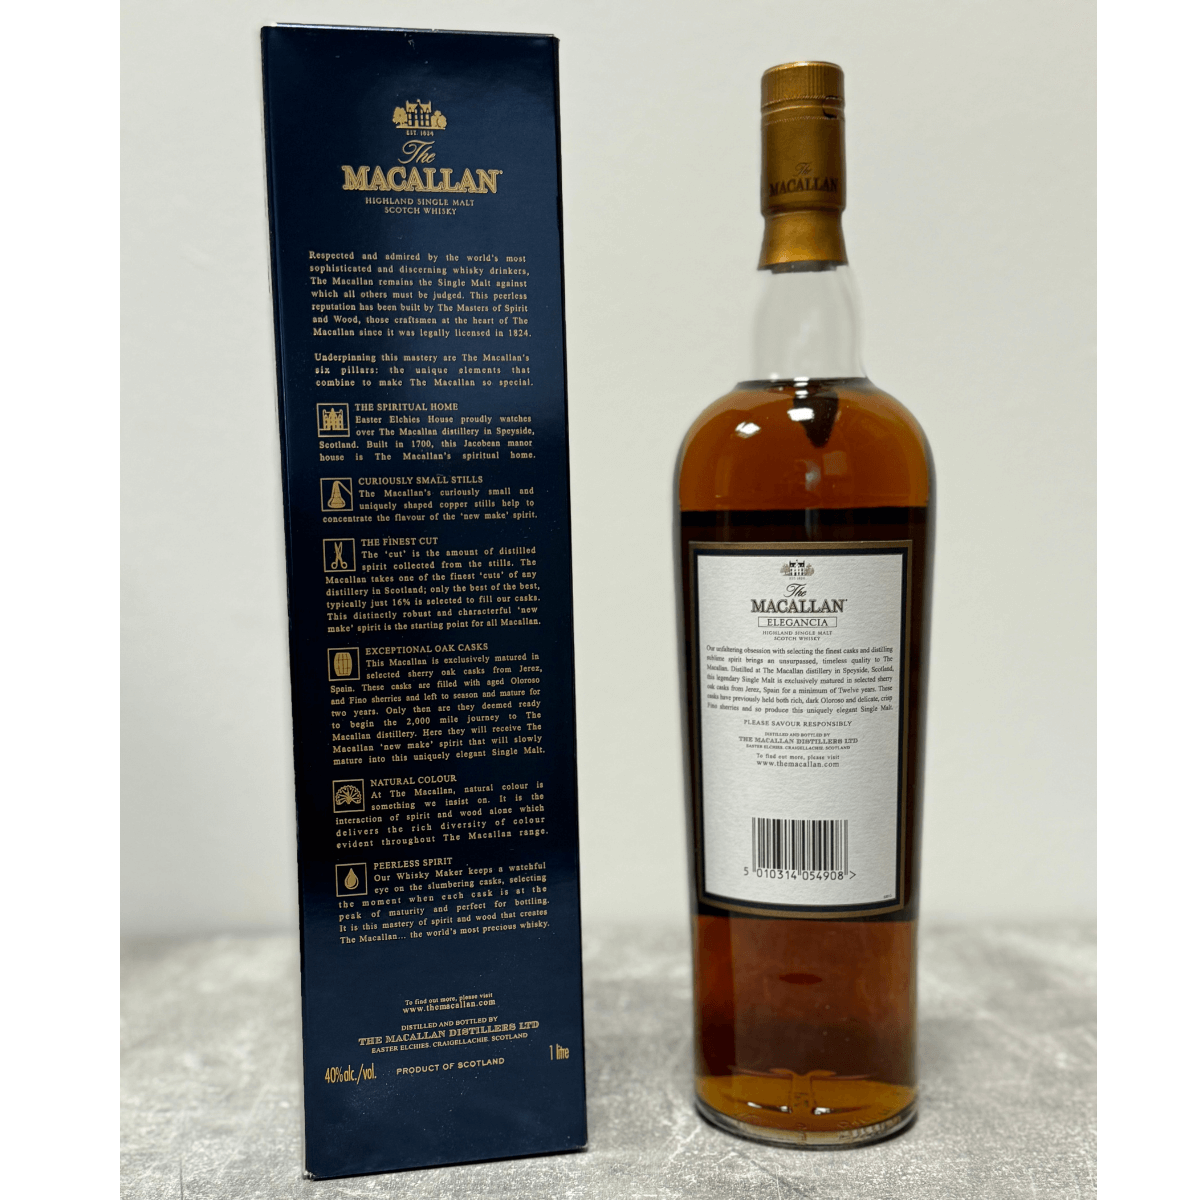 Macallan 12 Elegancia 1 Liter Flasche (1l / 40% Vol) (Sammlerstück/Sonderregel)